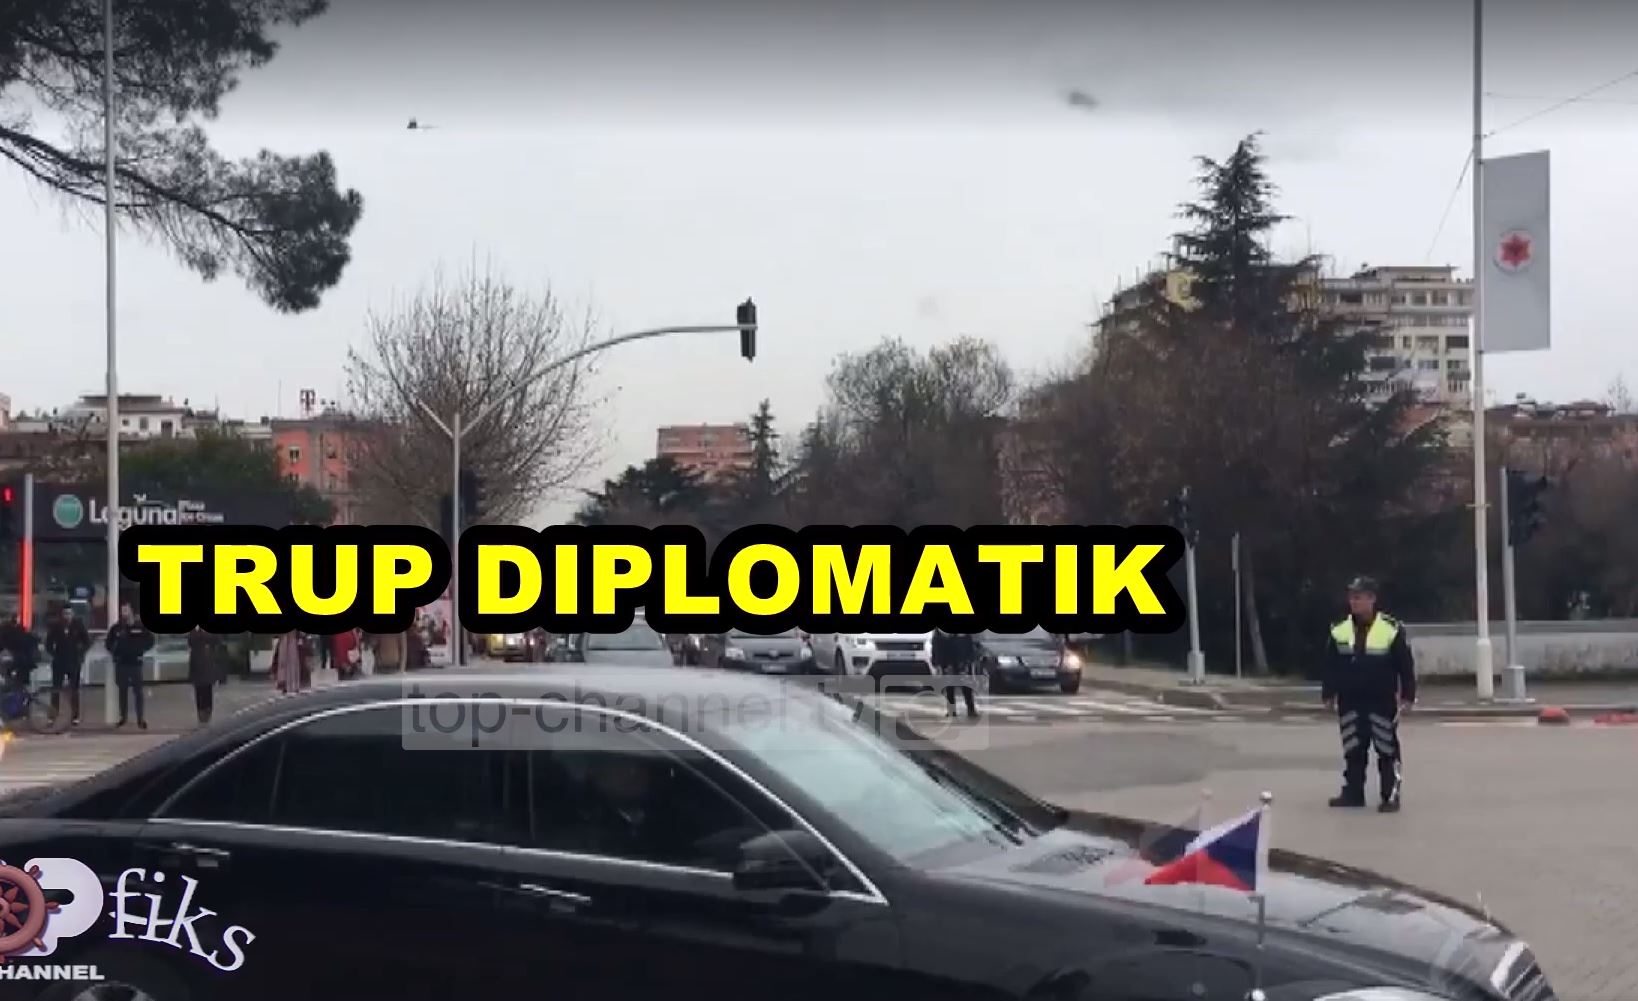 Çudira shqiptare! Ambulanca bllokohet për t’i hapur rrugë trupit diplomatik